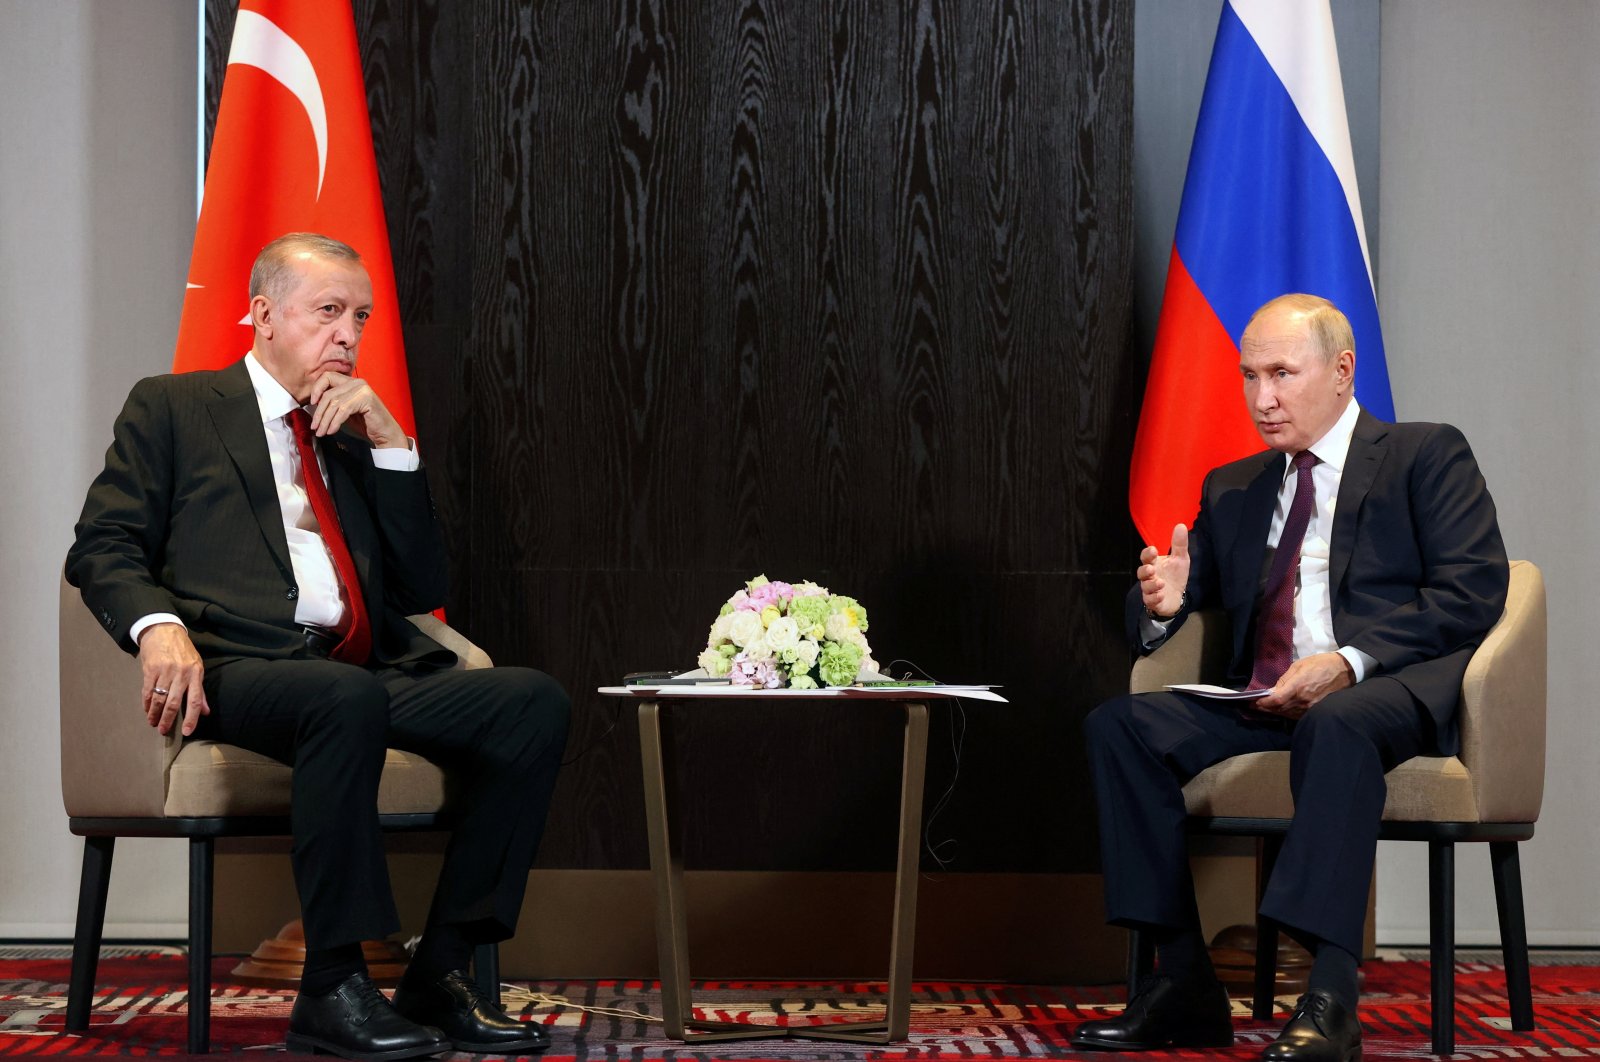 Türkiye akan membayar 25% pasokan gas Rusia dalam rubel: Putin